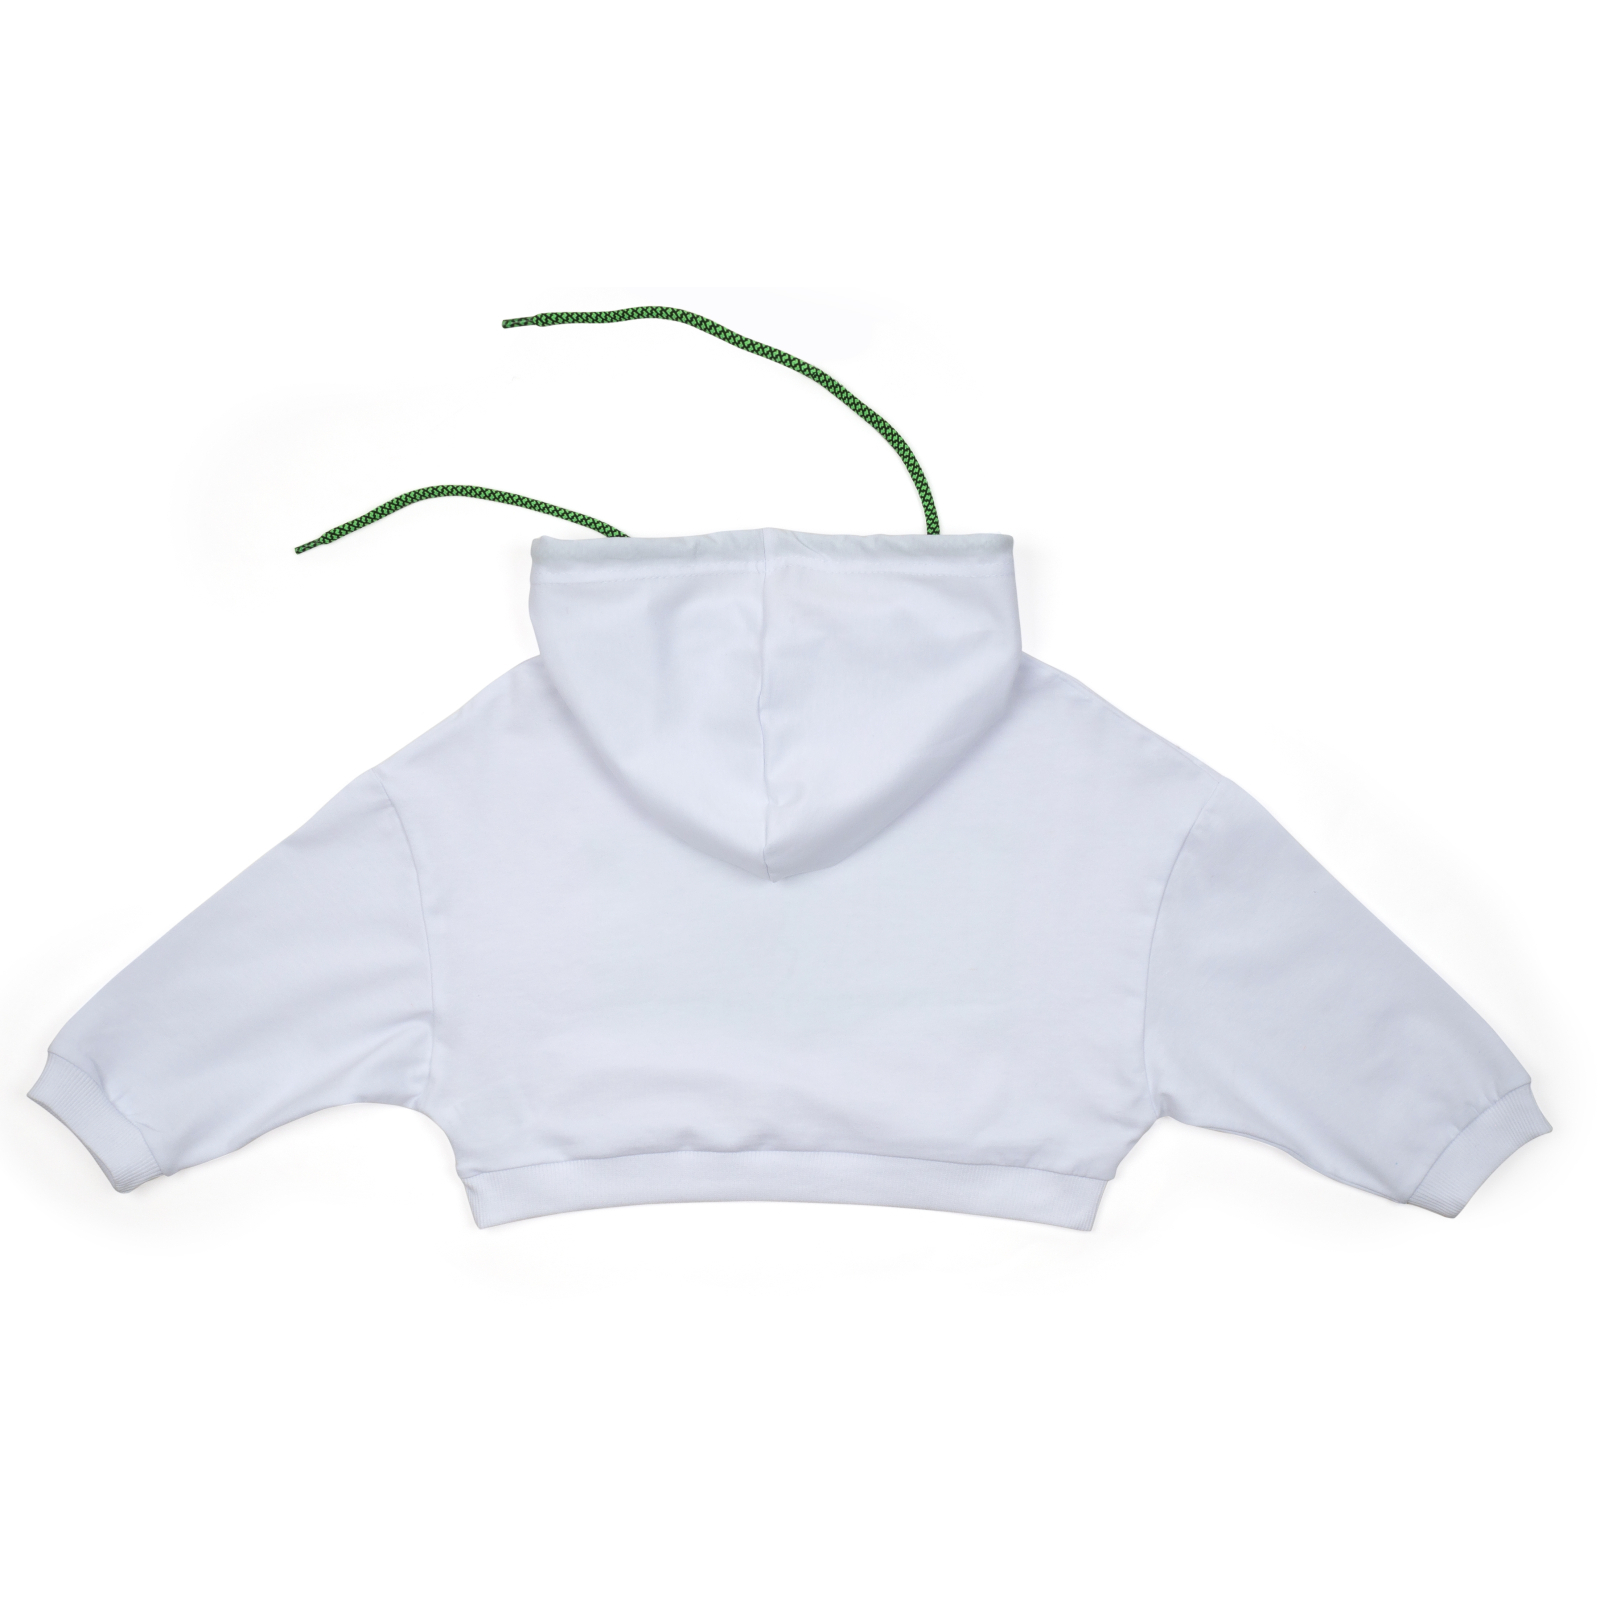 Кофта A-Yugi с капюшоном укороченная (4134-134G-white) изображение 2